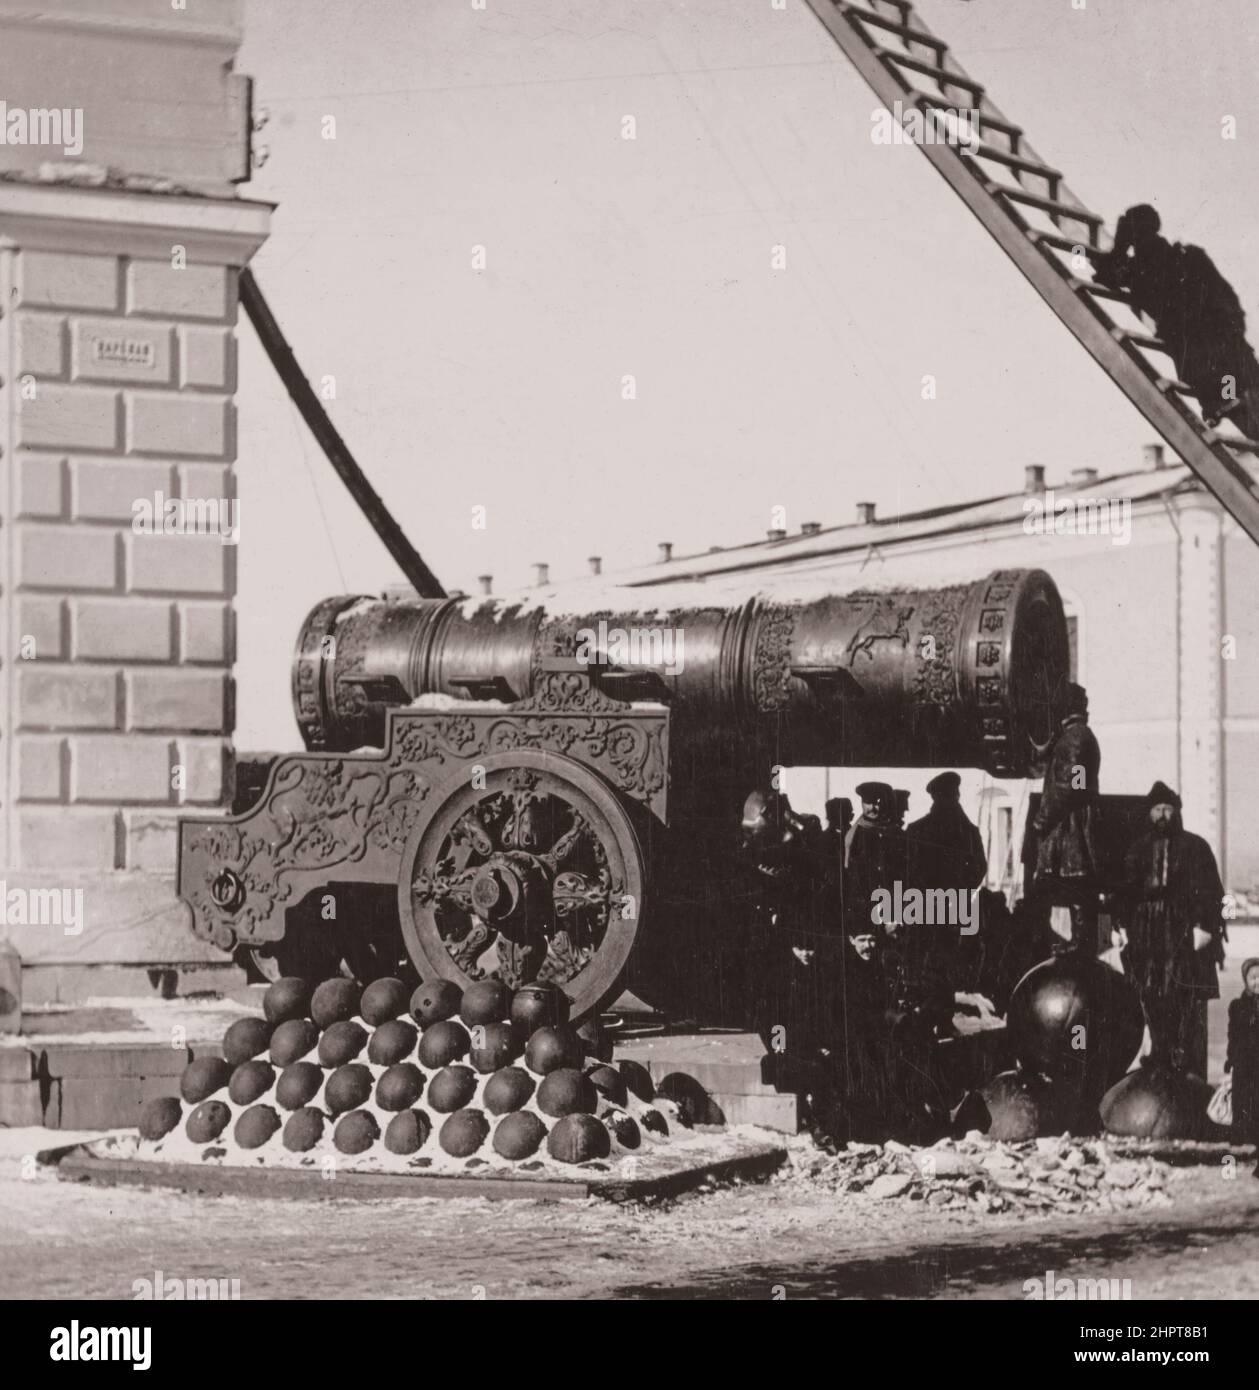 Photo d'époque de Tsar Cannon au Kremlin de Moscou. Empire russe. 1900s le canon Tsar est un grand morceau d'artillerie de la période moderne du début (connu sous le nom de a b. Banque D'Images